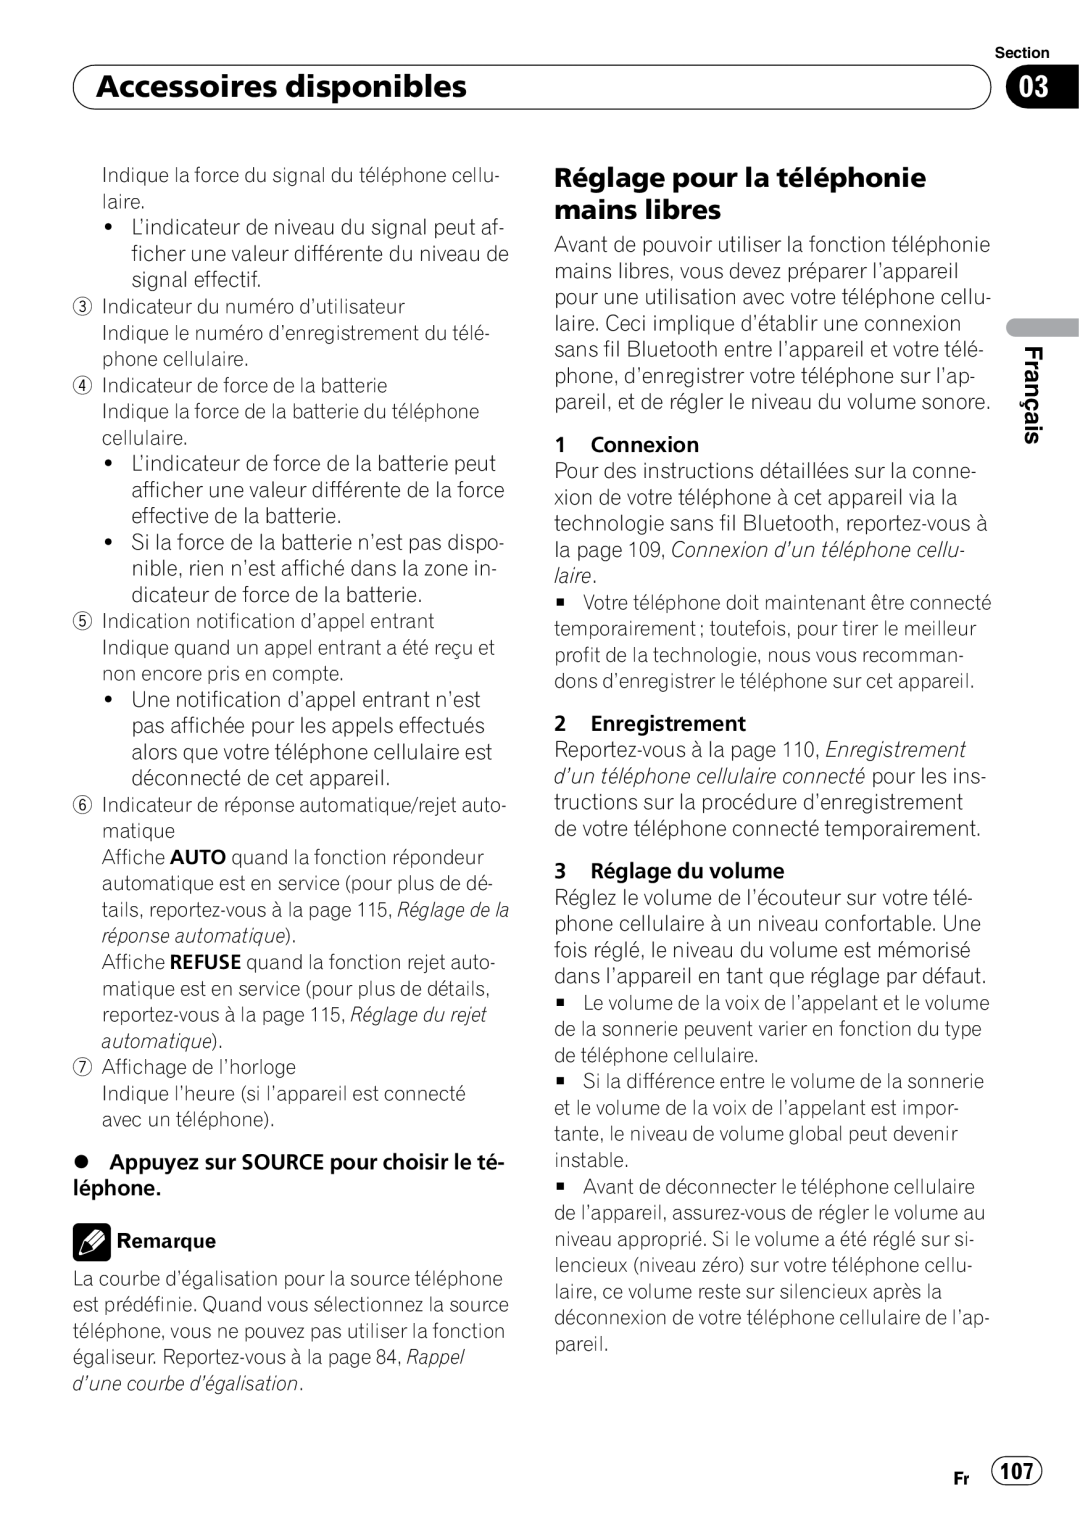 Pioneer DEH-P5900IB operation manual Réglage pour la téléphonie mains libres, Accessoires disponibles, Français 